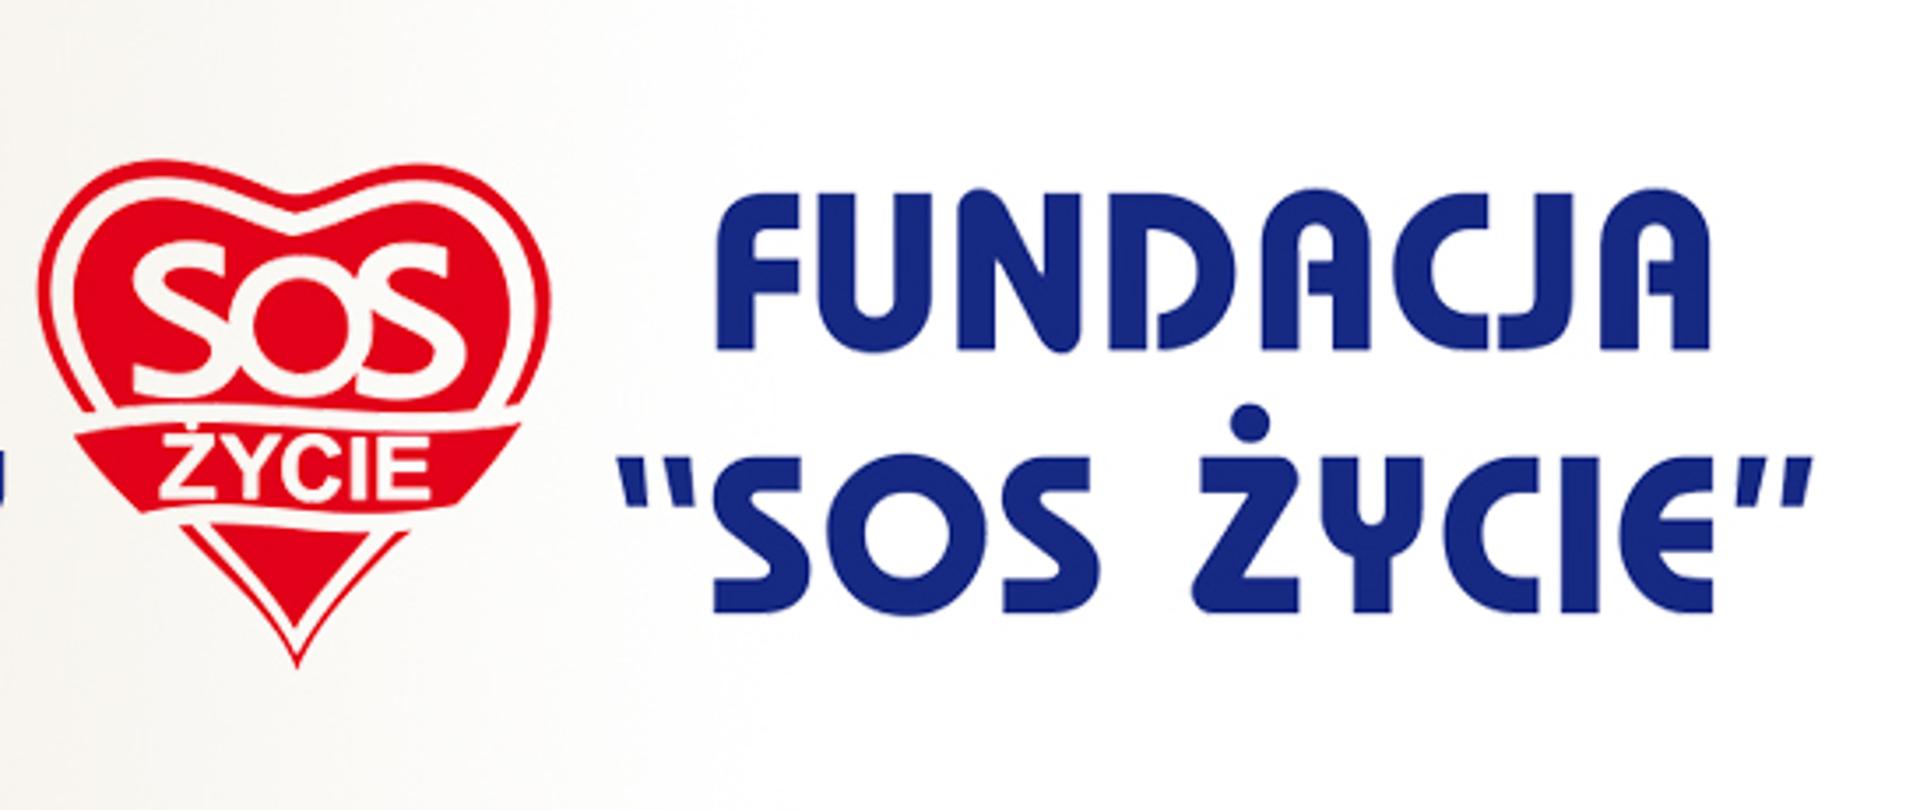 Fundacja "SOS Życie"